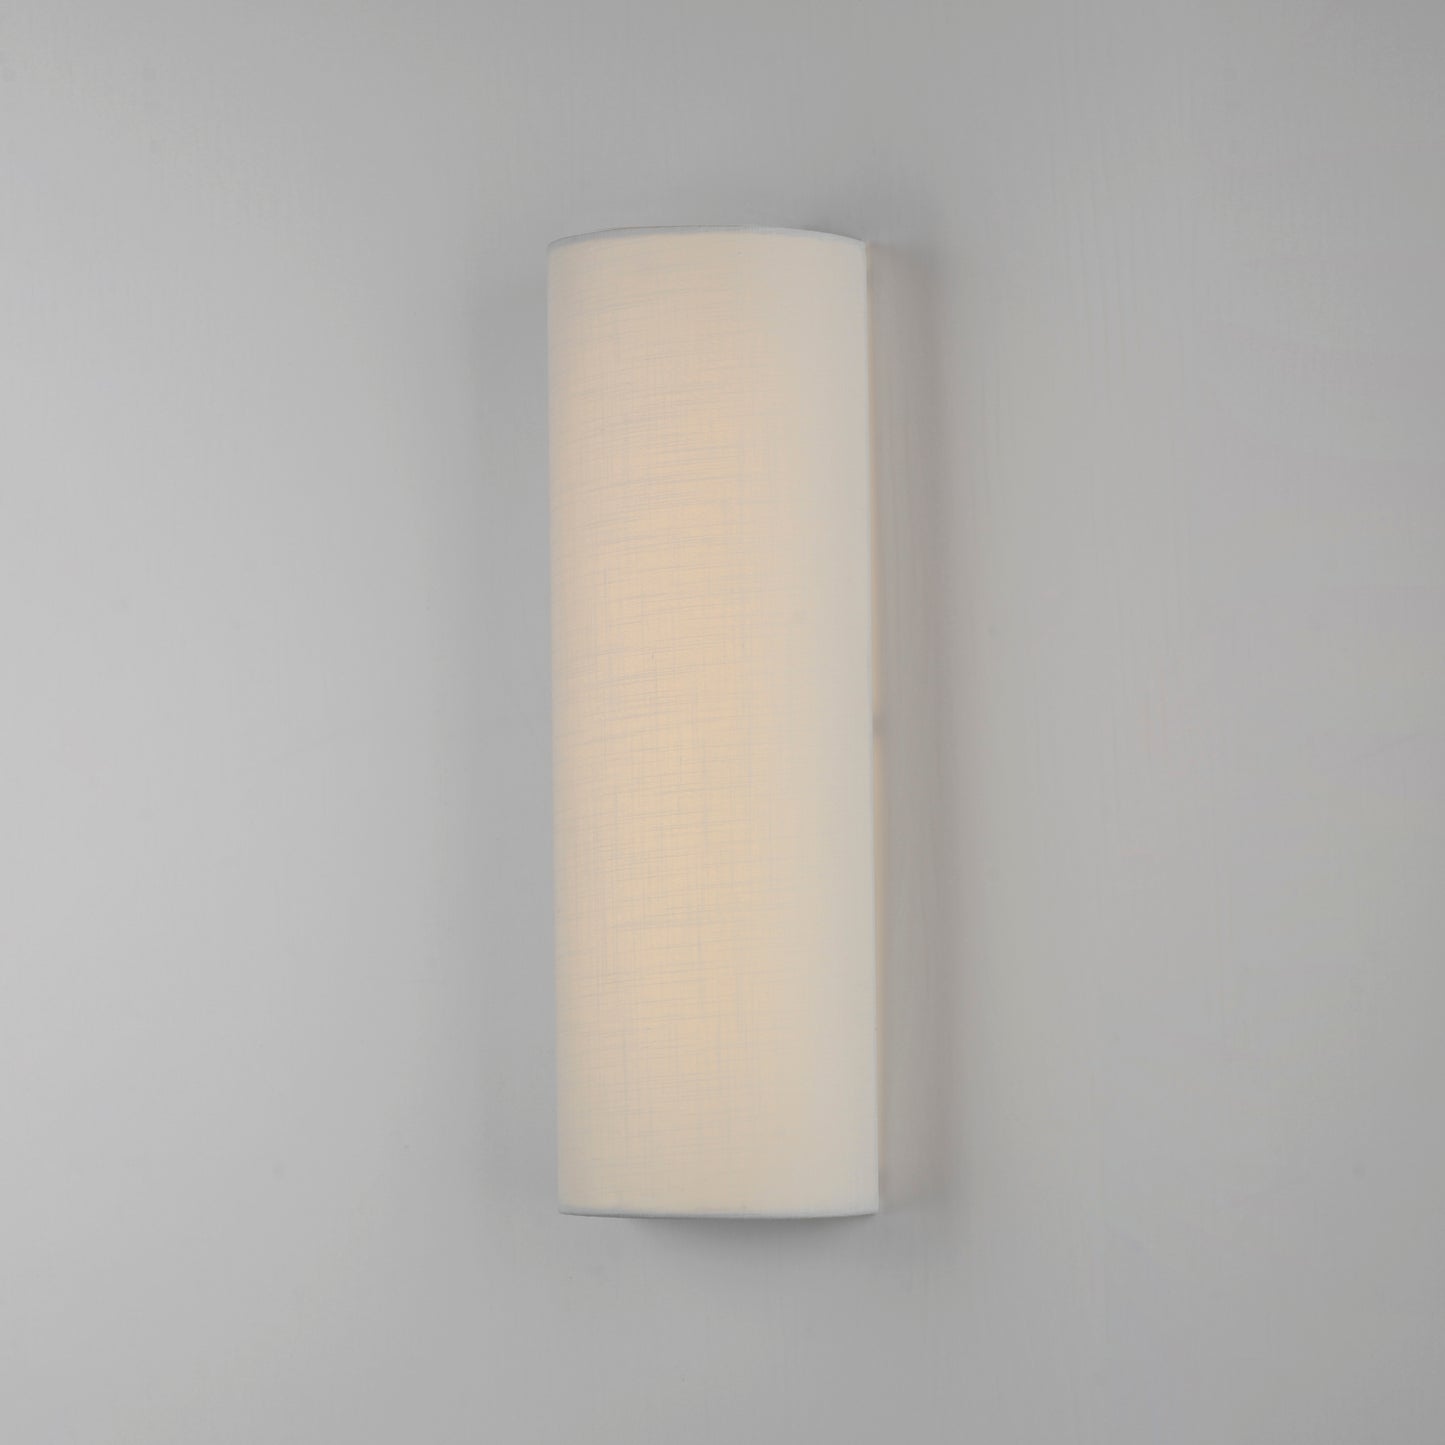 10228WL - 1 Light Prime 6" Wall Sconce - White Linen